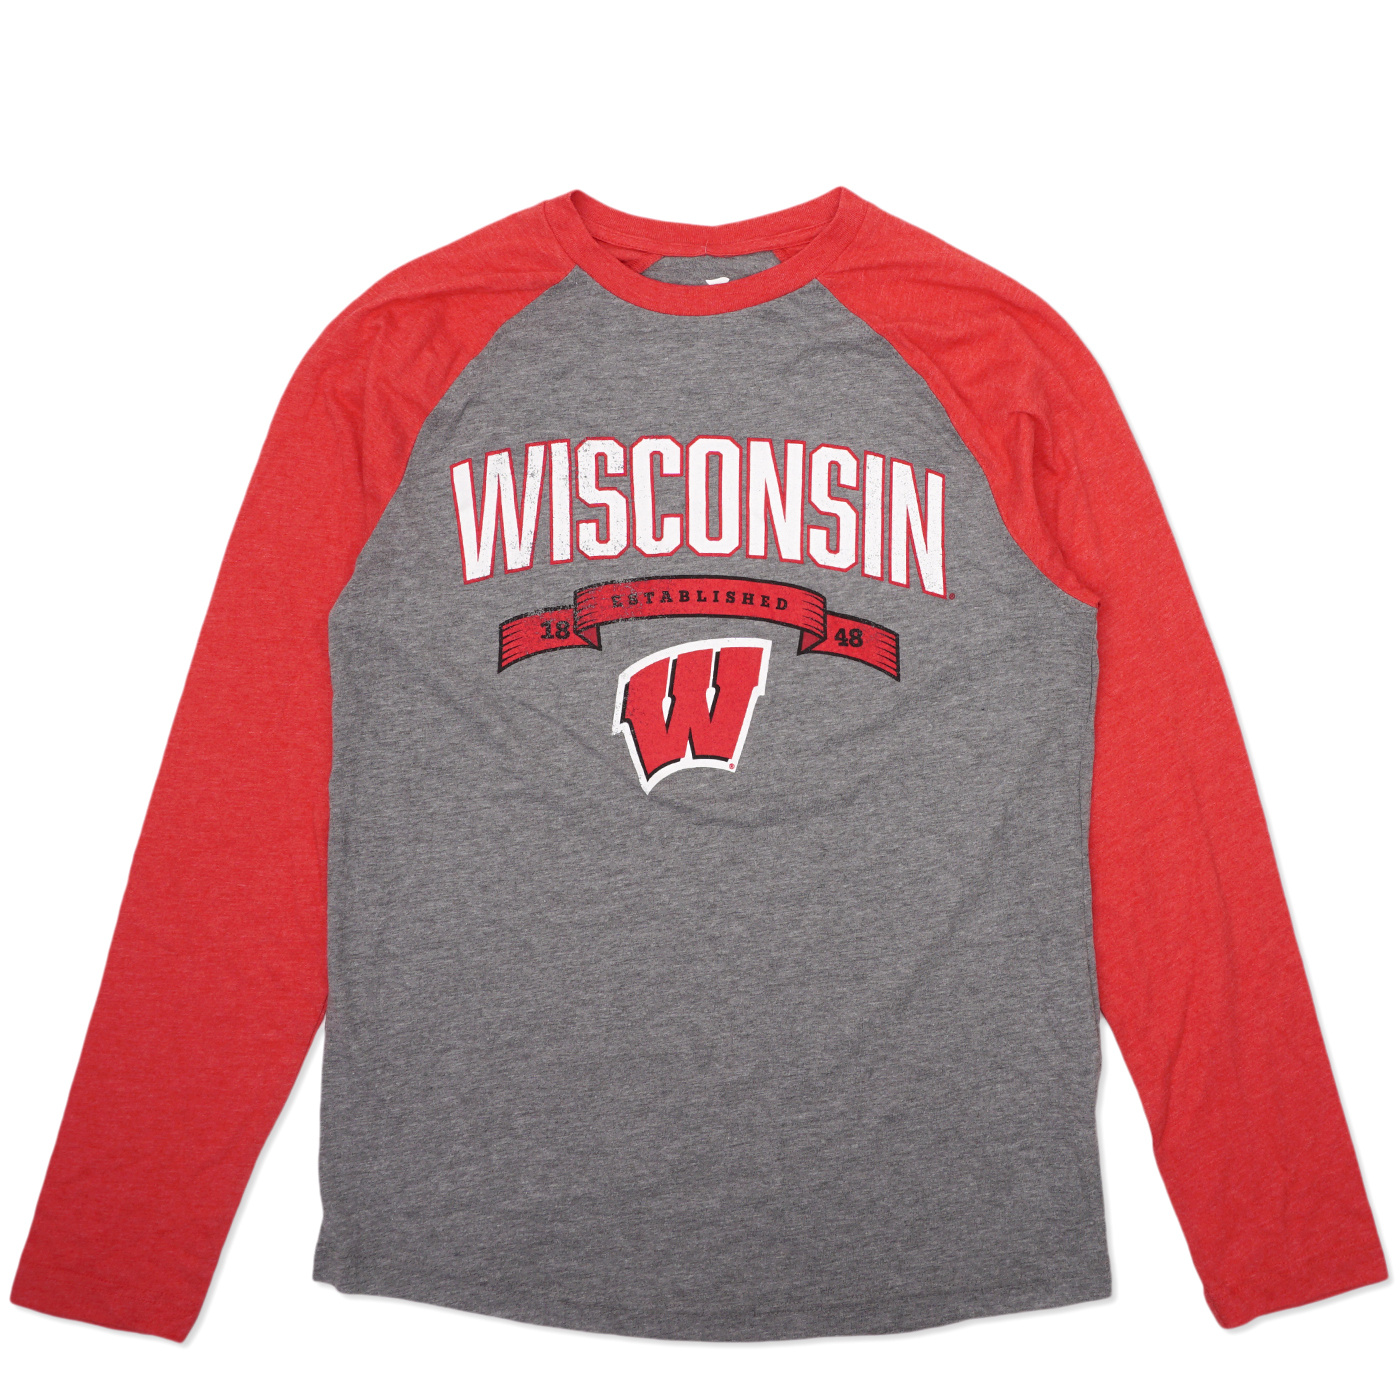 Wisconsin Badgers women's jersey